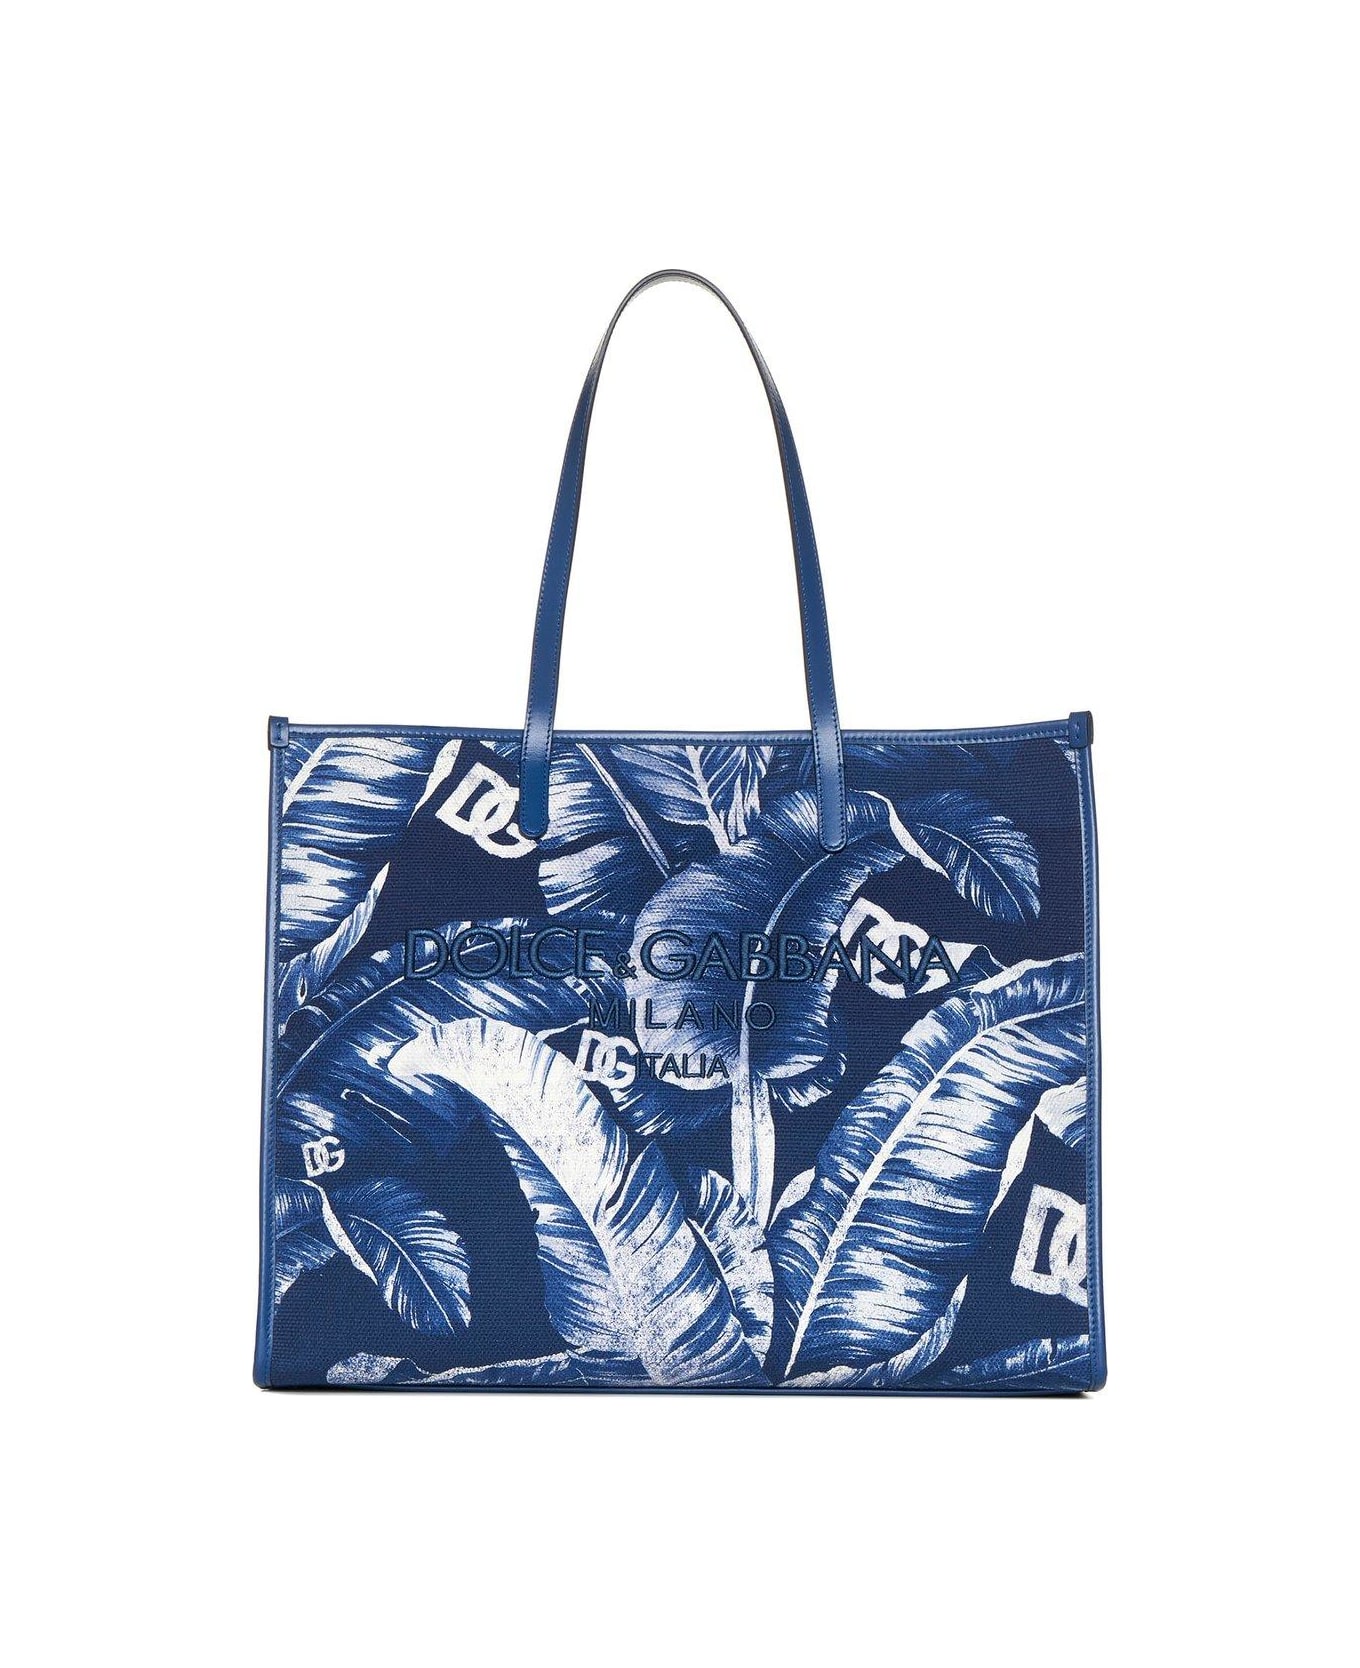 Dolce & Gabbana Leaf Printed Shoulder Bag - Blue トートバッグ